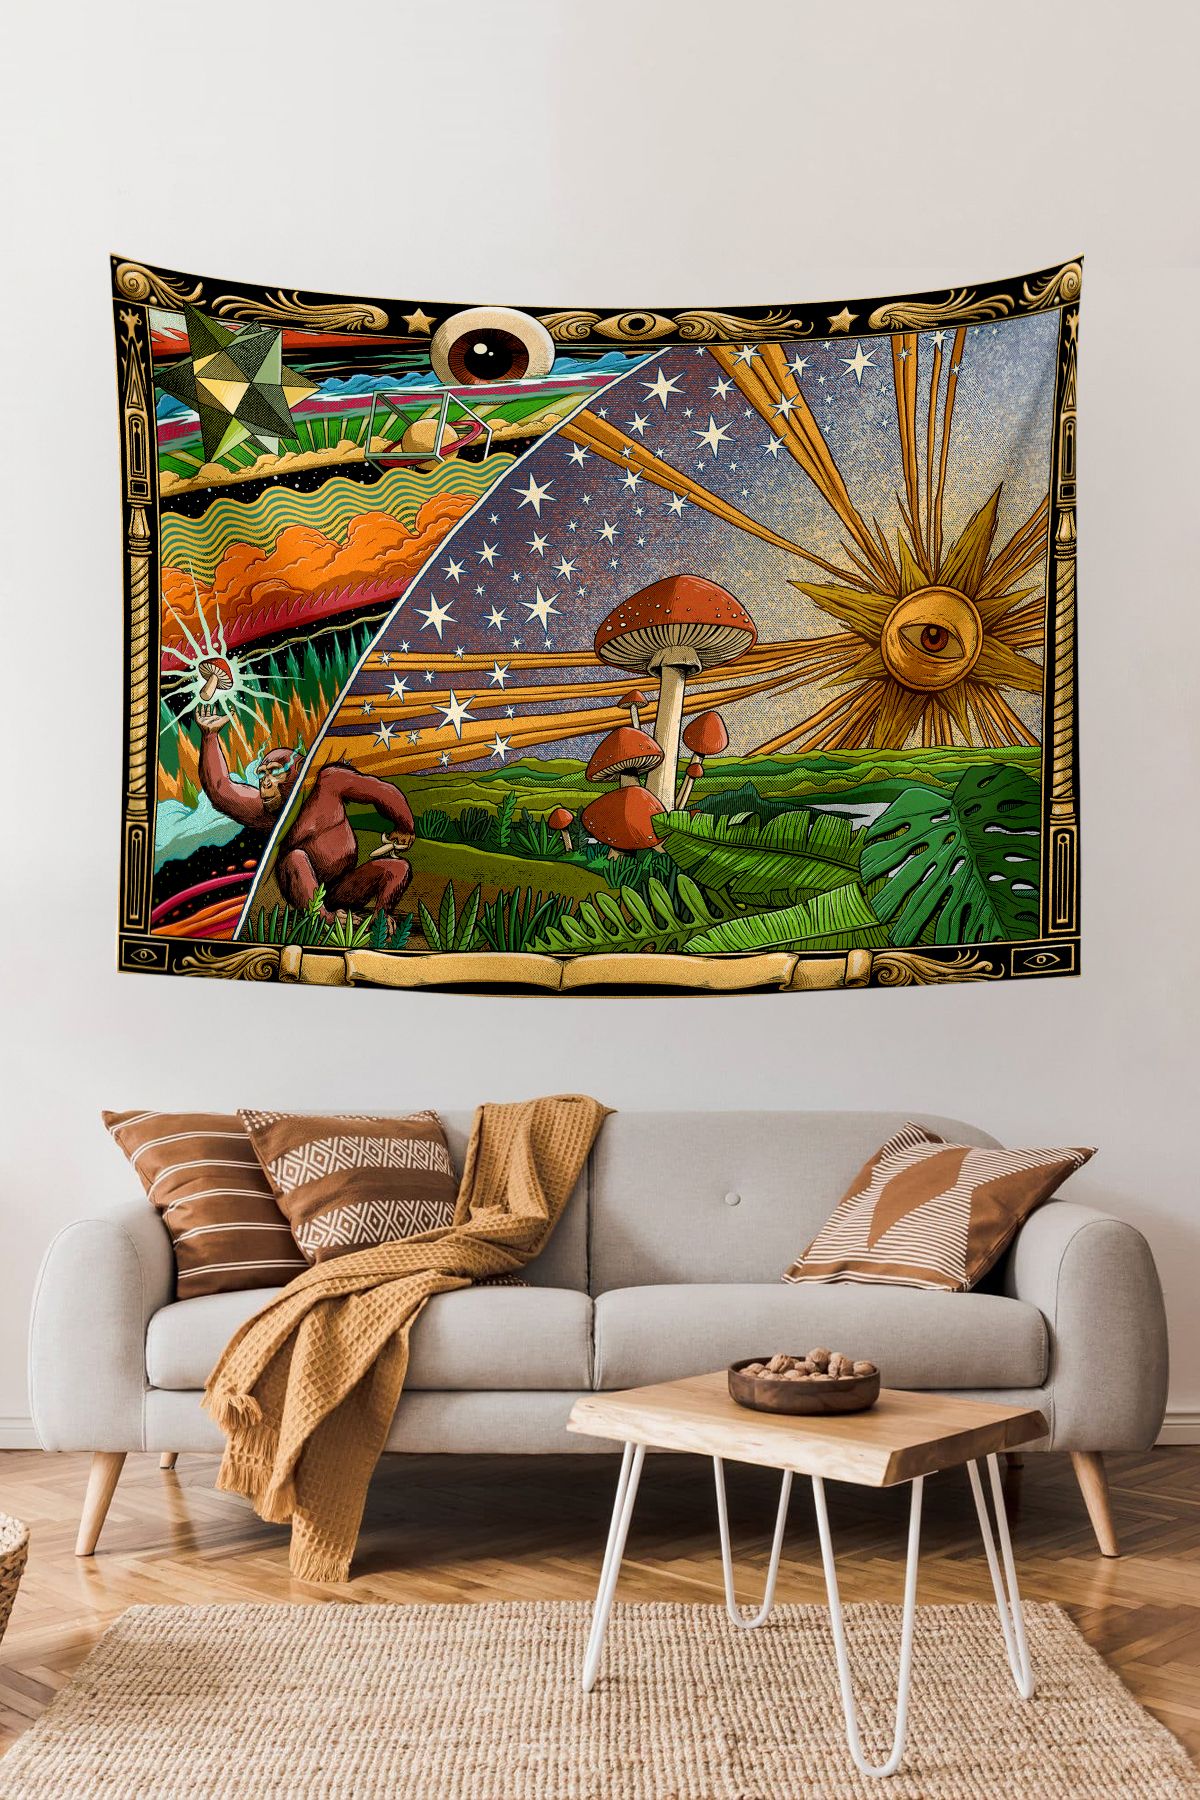 KanvasSepeti Mantar Trip Güneş Kozmik Psychedelic Duvar Örtüsü Yağlı Boya Dokulu